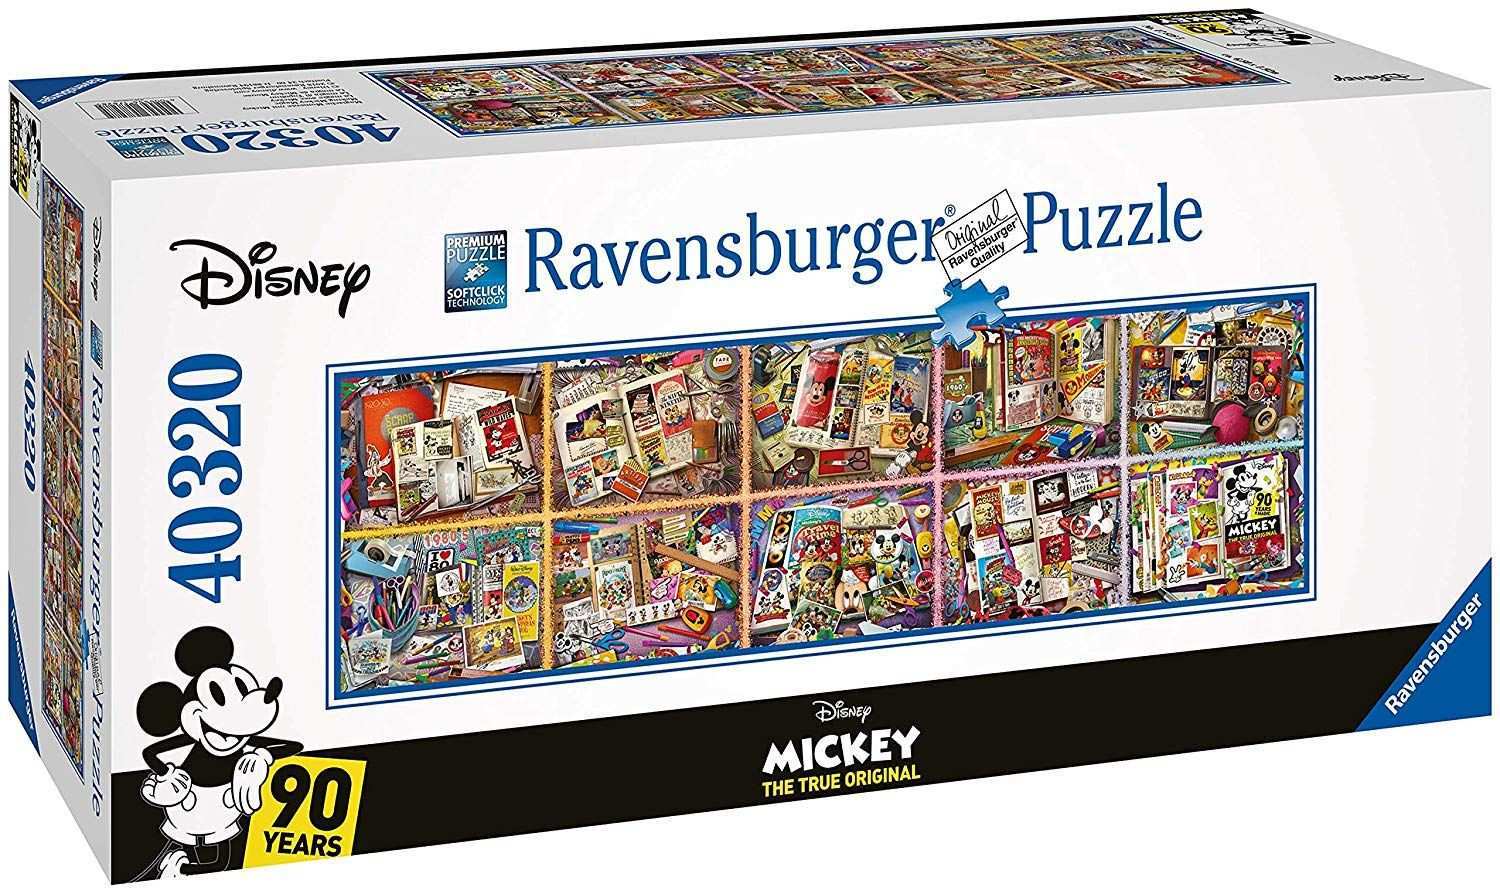 Eine Lebensaufgabe Das Ravensburger Puzzle Mit Gigantischen Dimensionen Und 40 000 Teile Ist Bei Amazon Fur 214 28 Zu Haben Der Puzzle Kaufen Puzzle Mickey